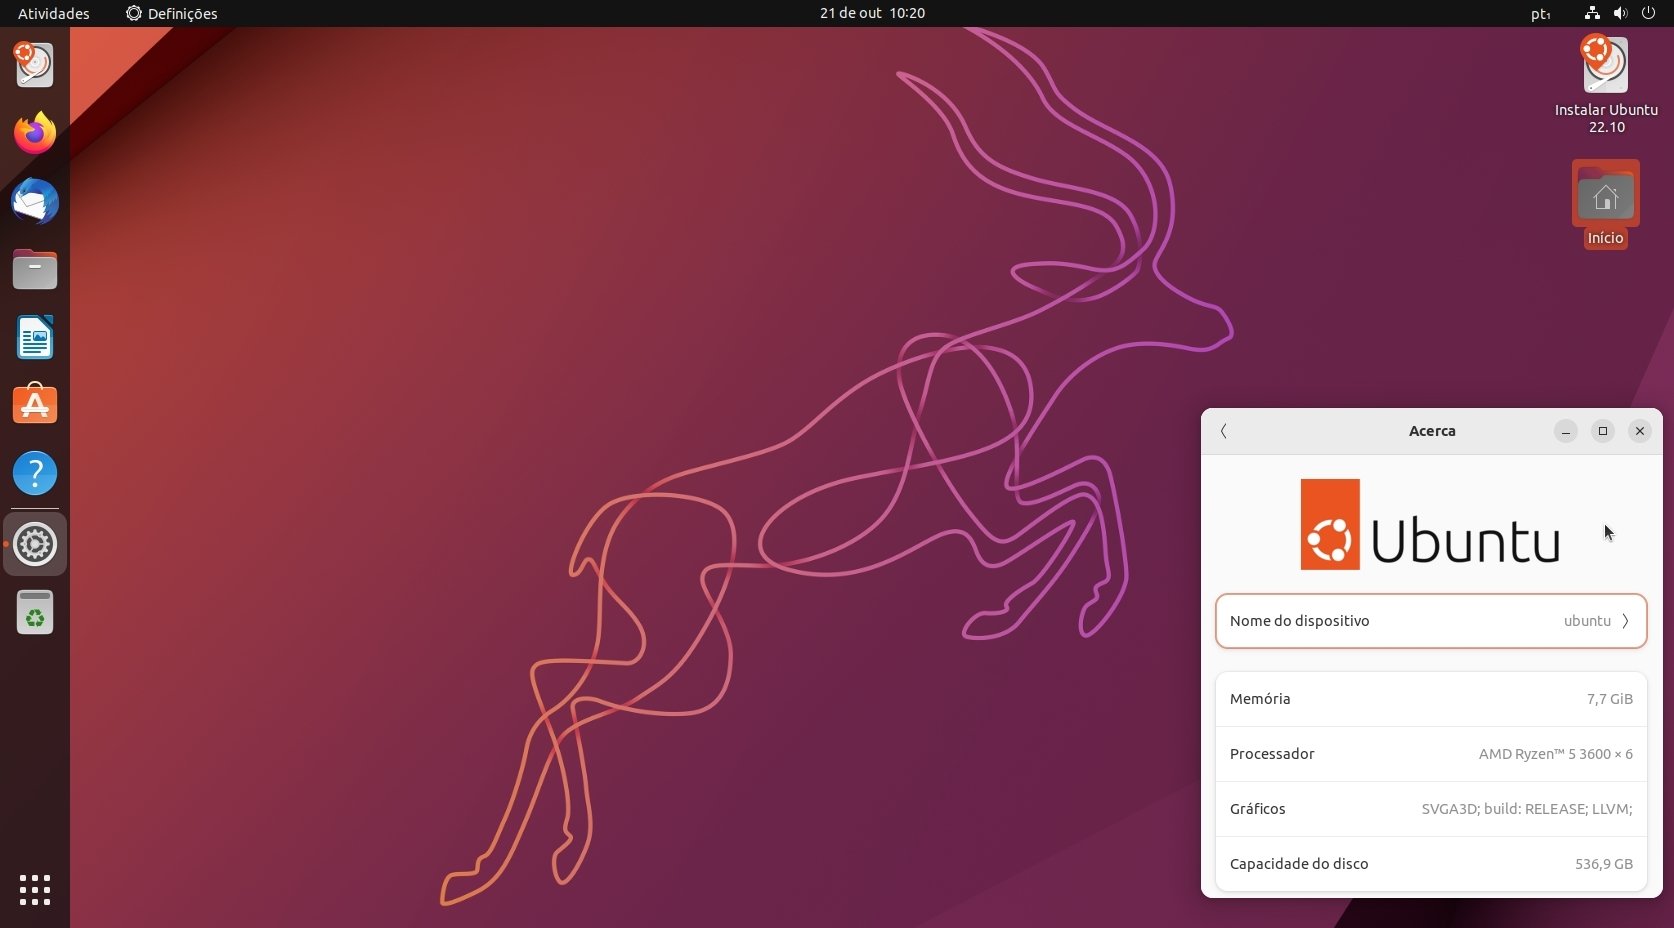 nova versão do Ubuntu 22.10